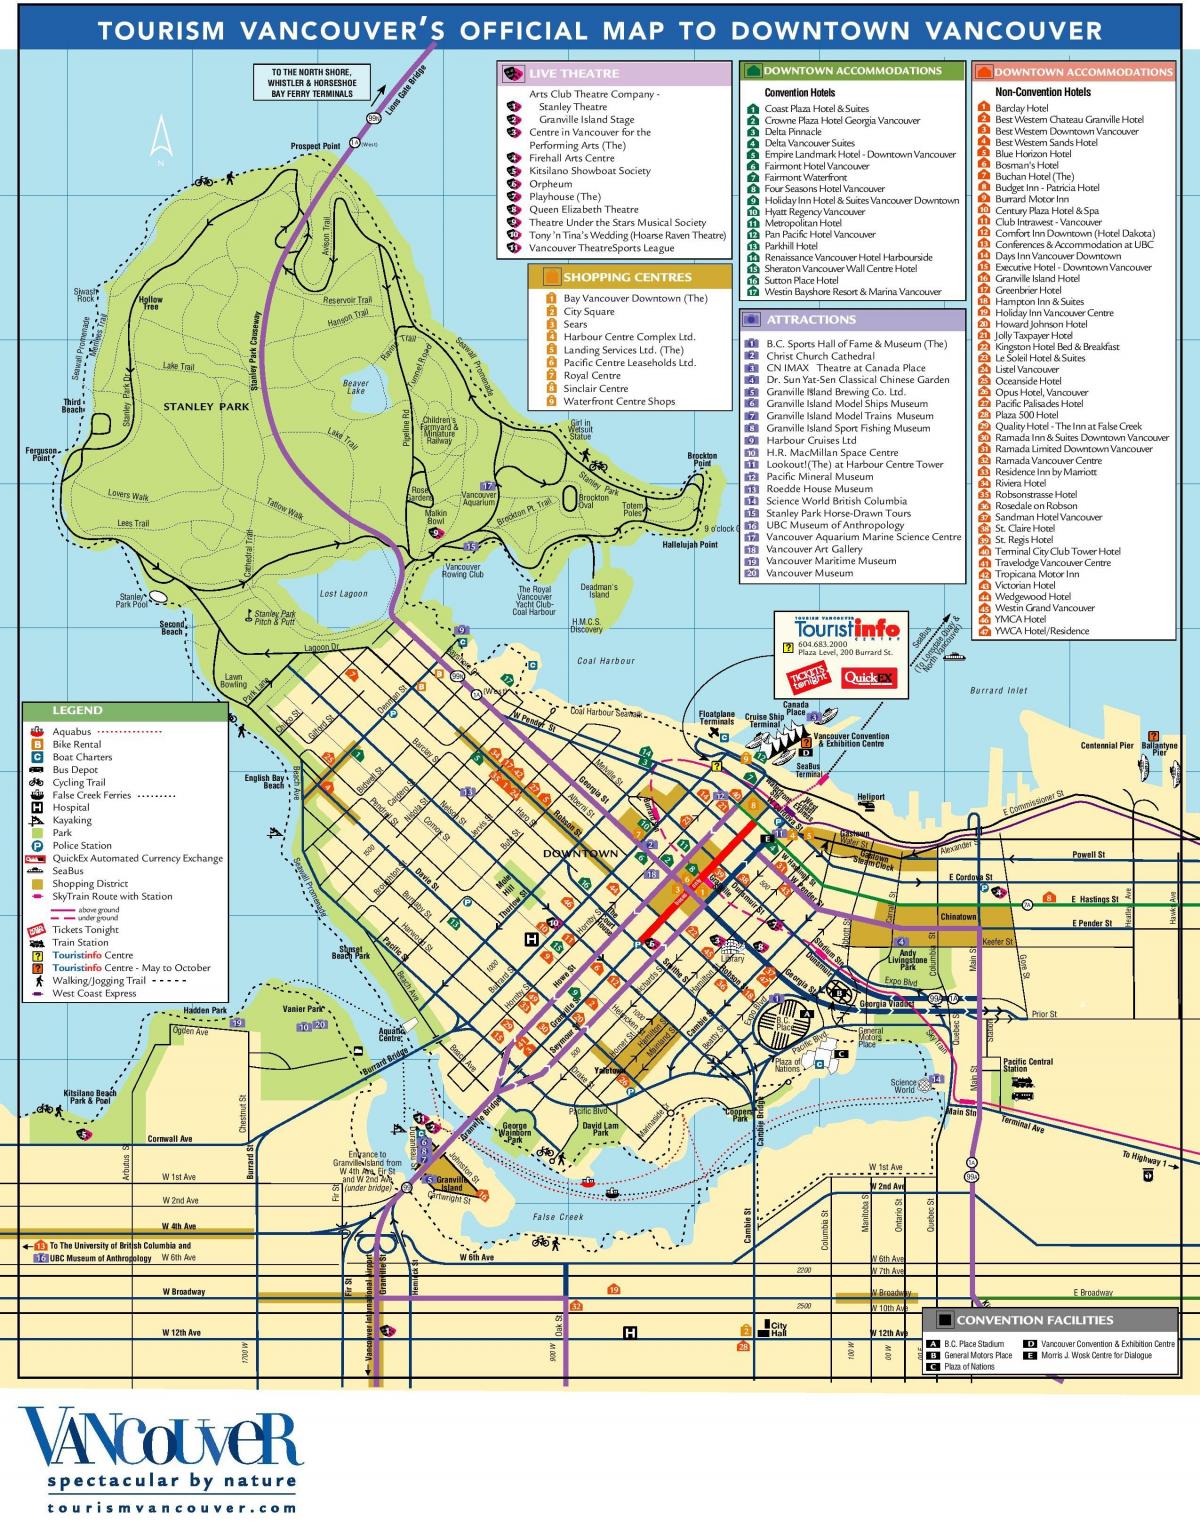 Vancouver-turistička karta